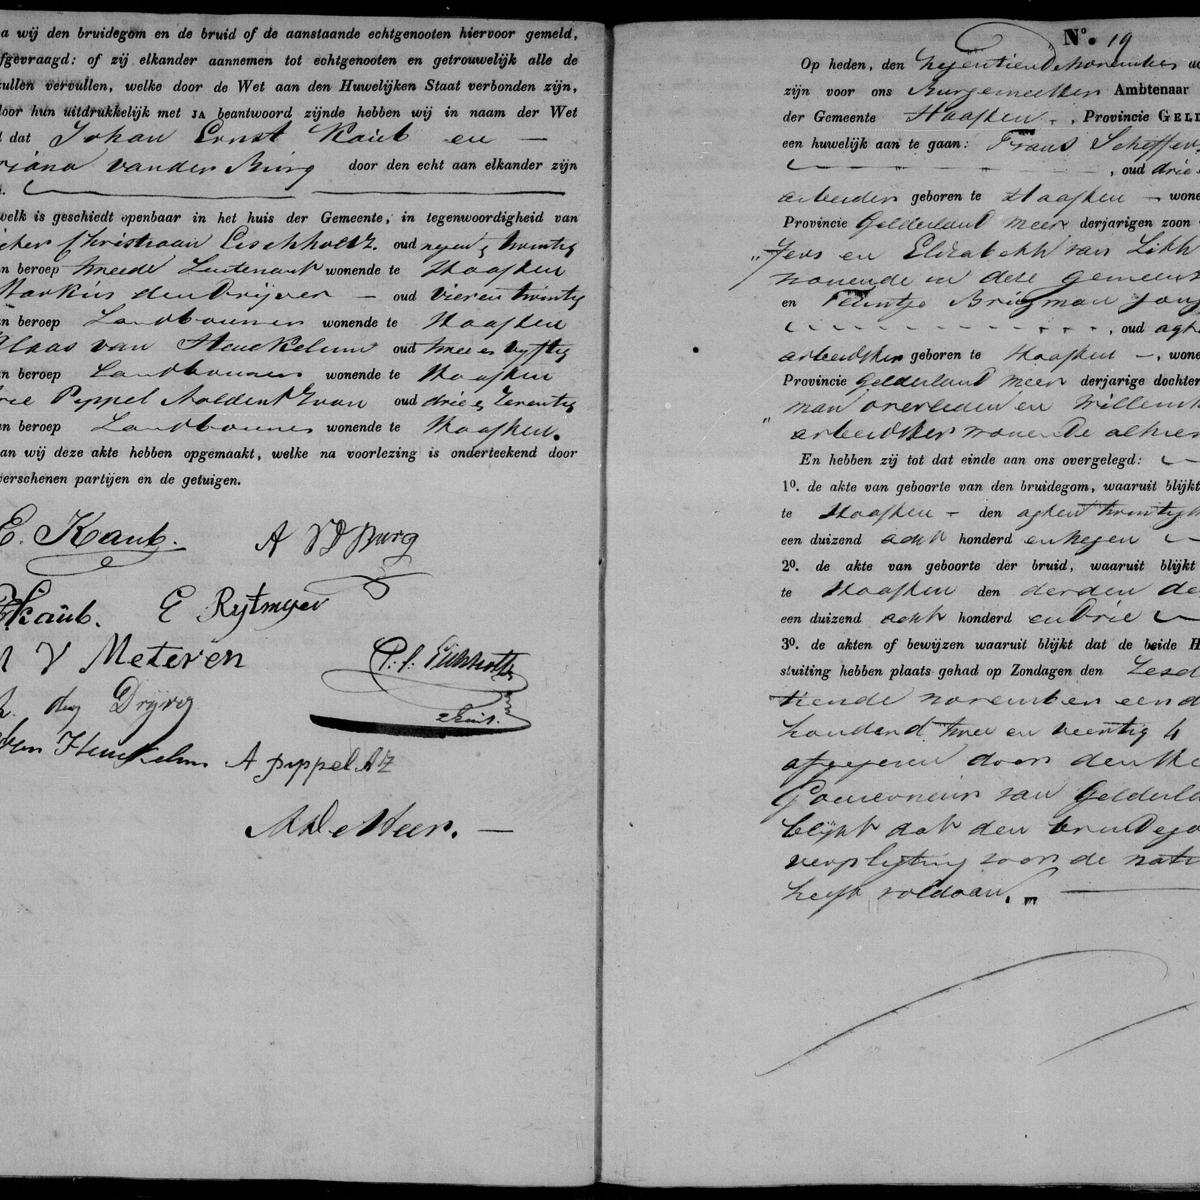 Civil registry of marriages, Haaften, 1842, records 18-19